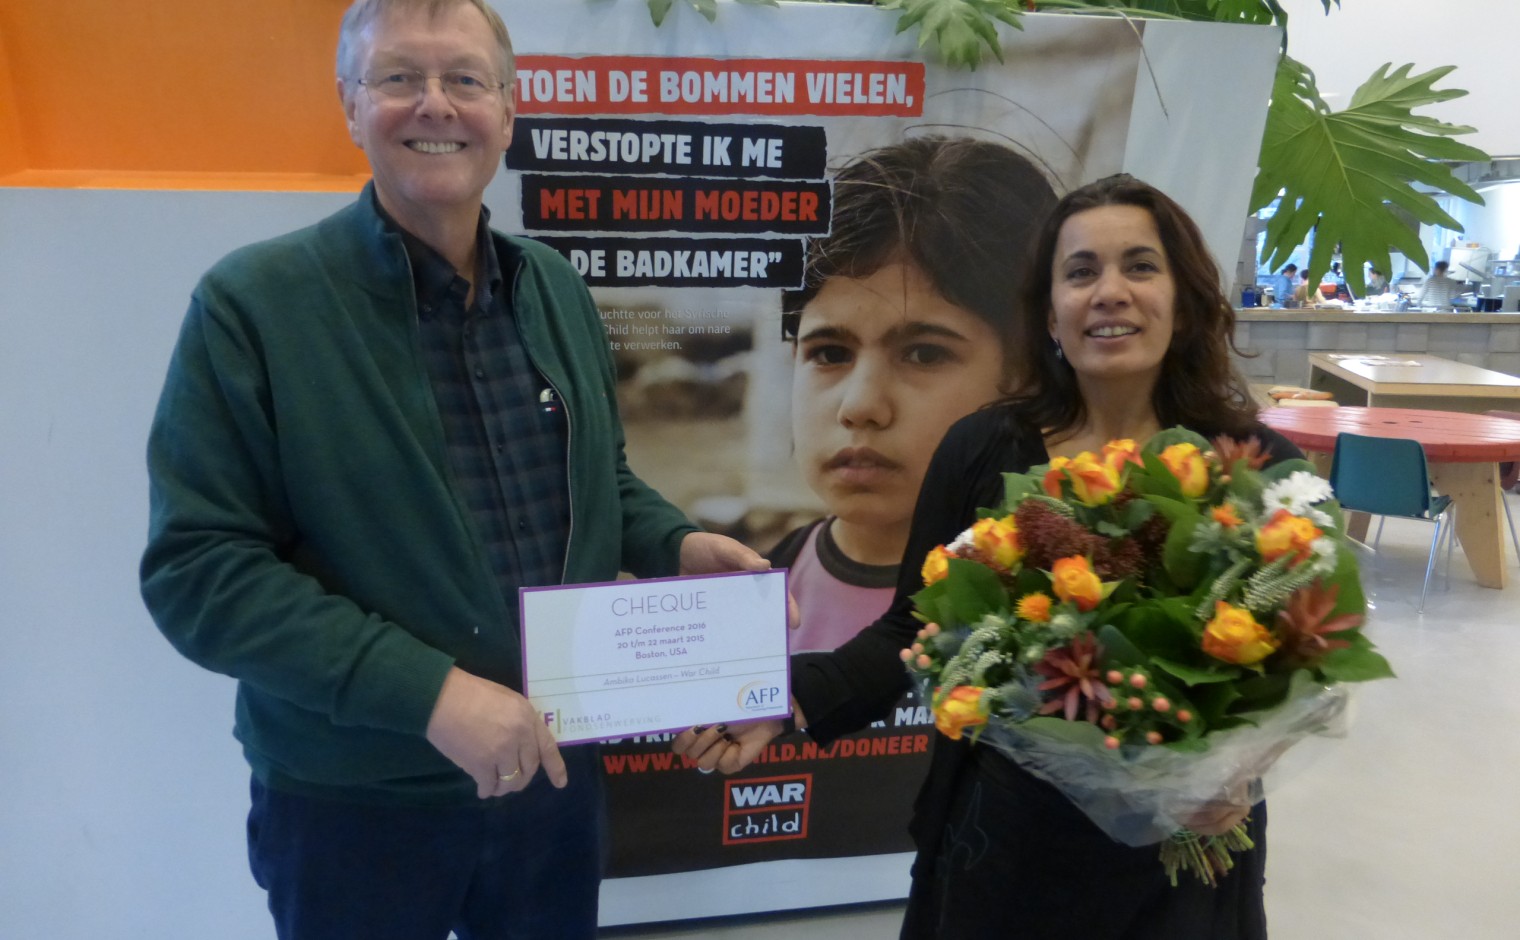 Ambika Lucassen van WarChild neemt prijs in ontvangst, uitgereikt door Jaap Zeekant, hoofdredacteur Vakblad Fondsenwerving